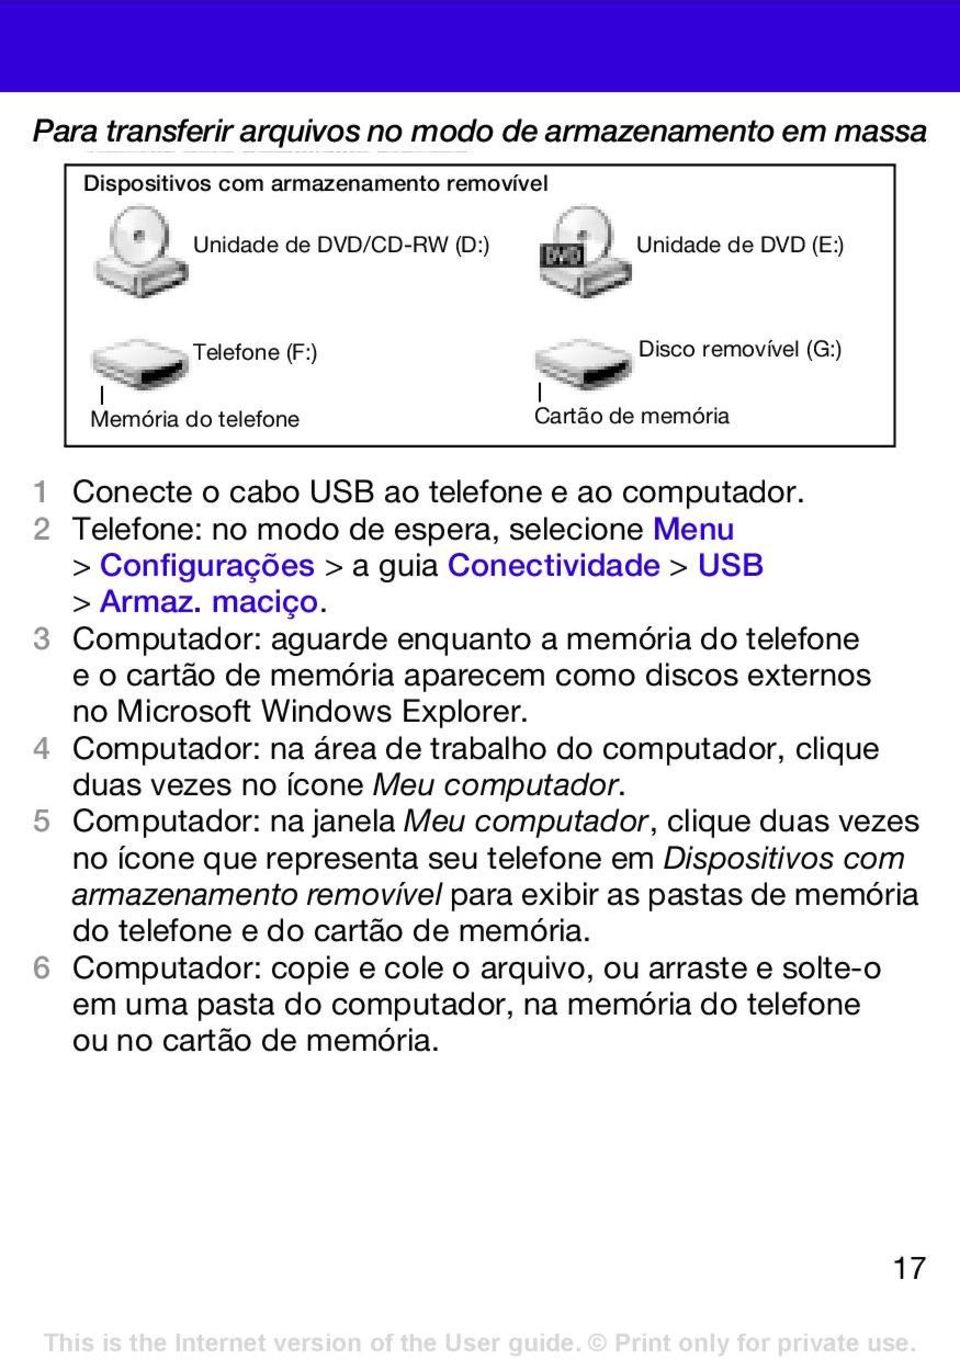 3 Computador: aguarde enquanto a memória do telefone e o cartão de memória aparecem como discos externos no Microsoft Windows Explorer.